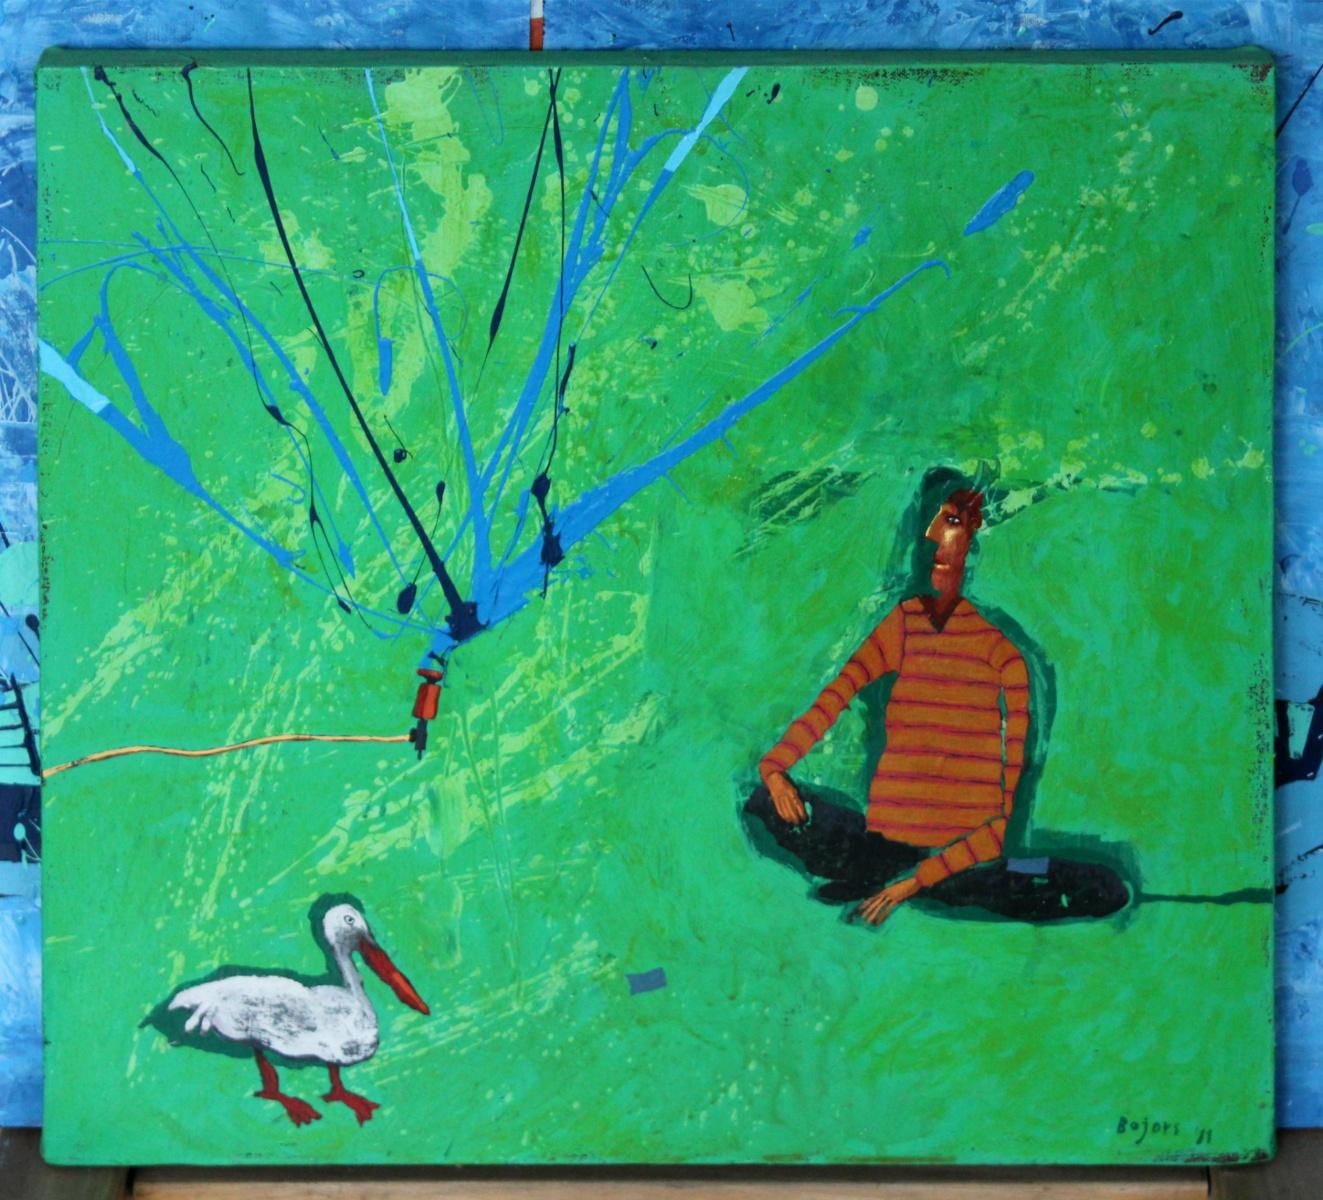 Retour avec un oiseau - Peinture figurative à l'acrylique, paysage, vert vibrant - Painting de Rafał Bojdys